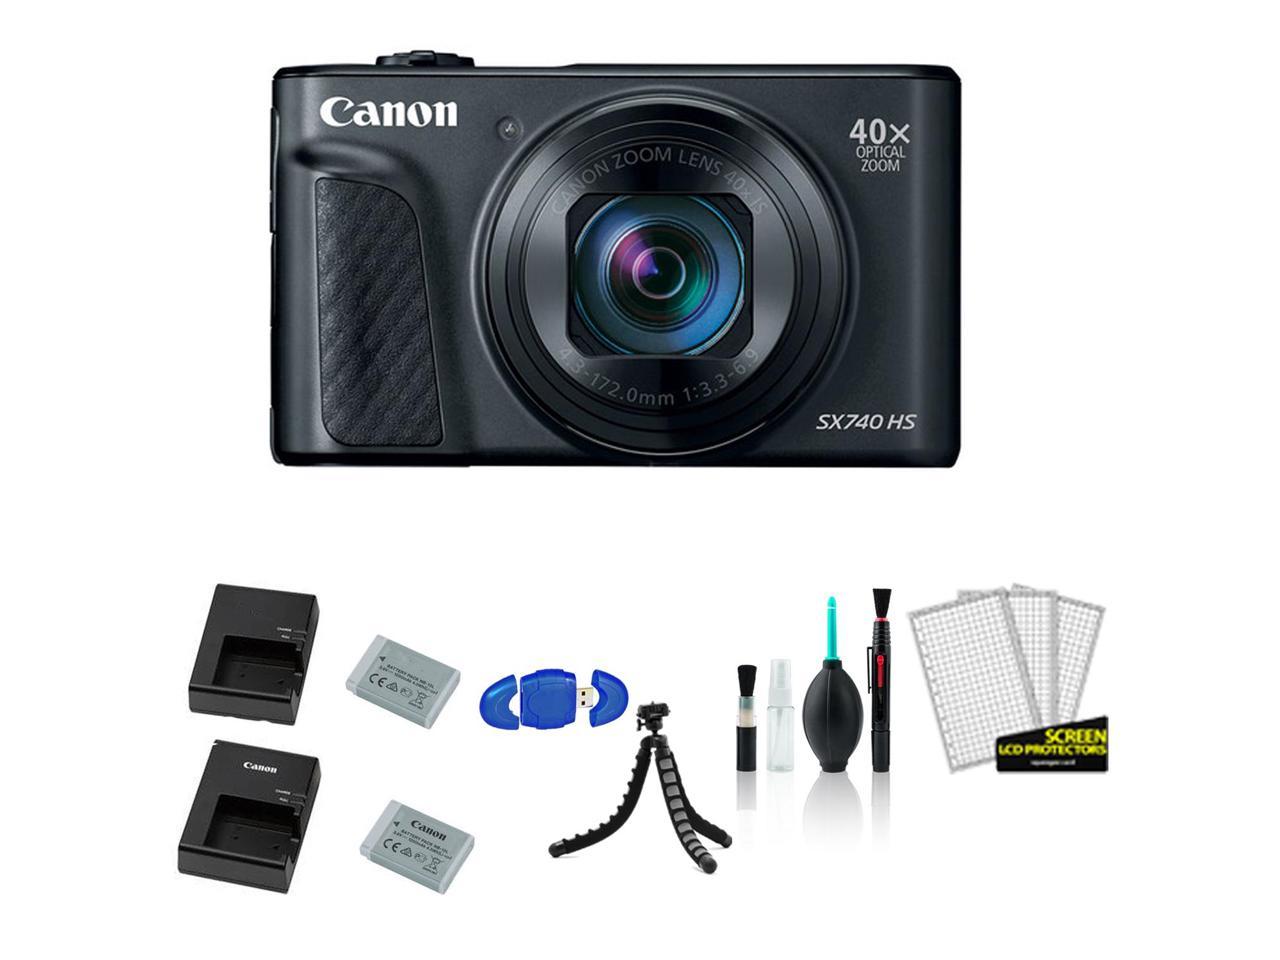 カメラ デジタルカメラ Canon PowerShot SX740 HS Digital Camera (Black) with Extra 